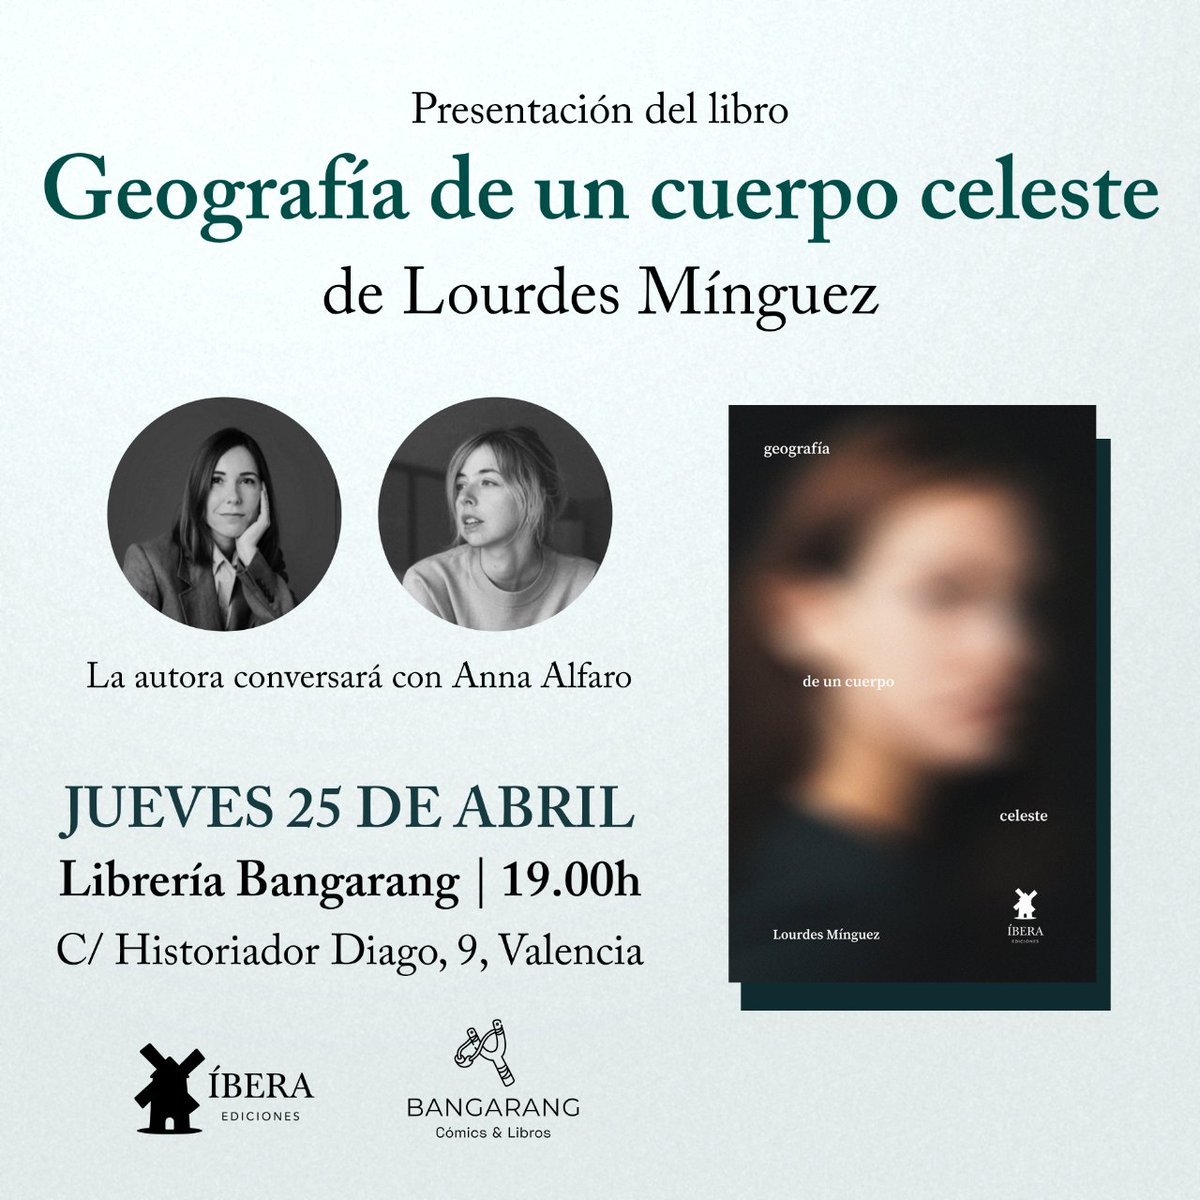 El jueves 25 de abril a las 19h nos acompañará Lourdes Mínguez para presentar su novela 'Geografía de un cuerpo celeste' editada por Ibera editorial, en conversación con Anna Alfaro.